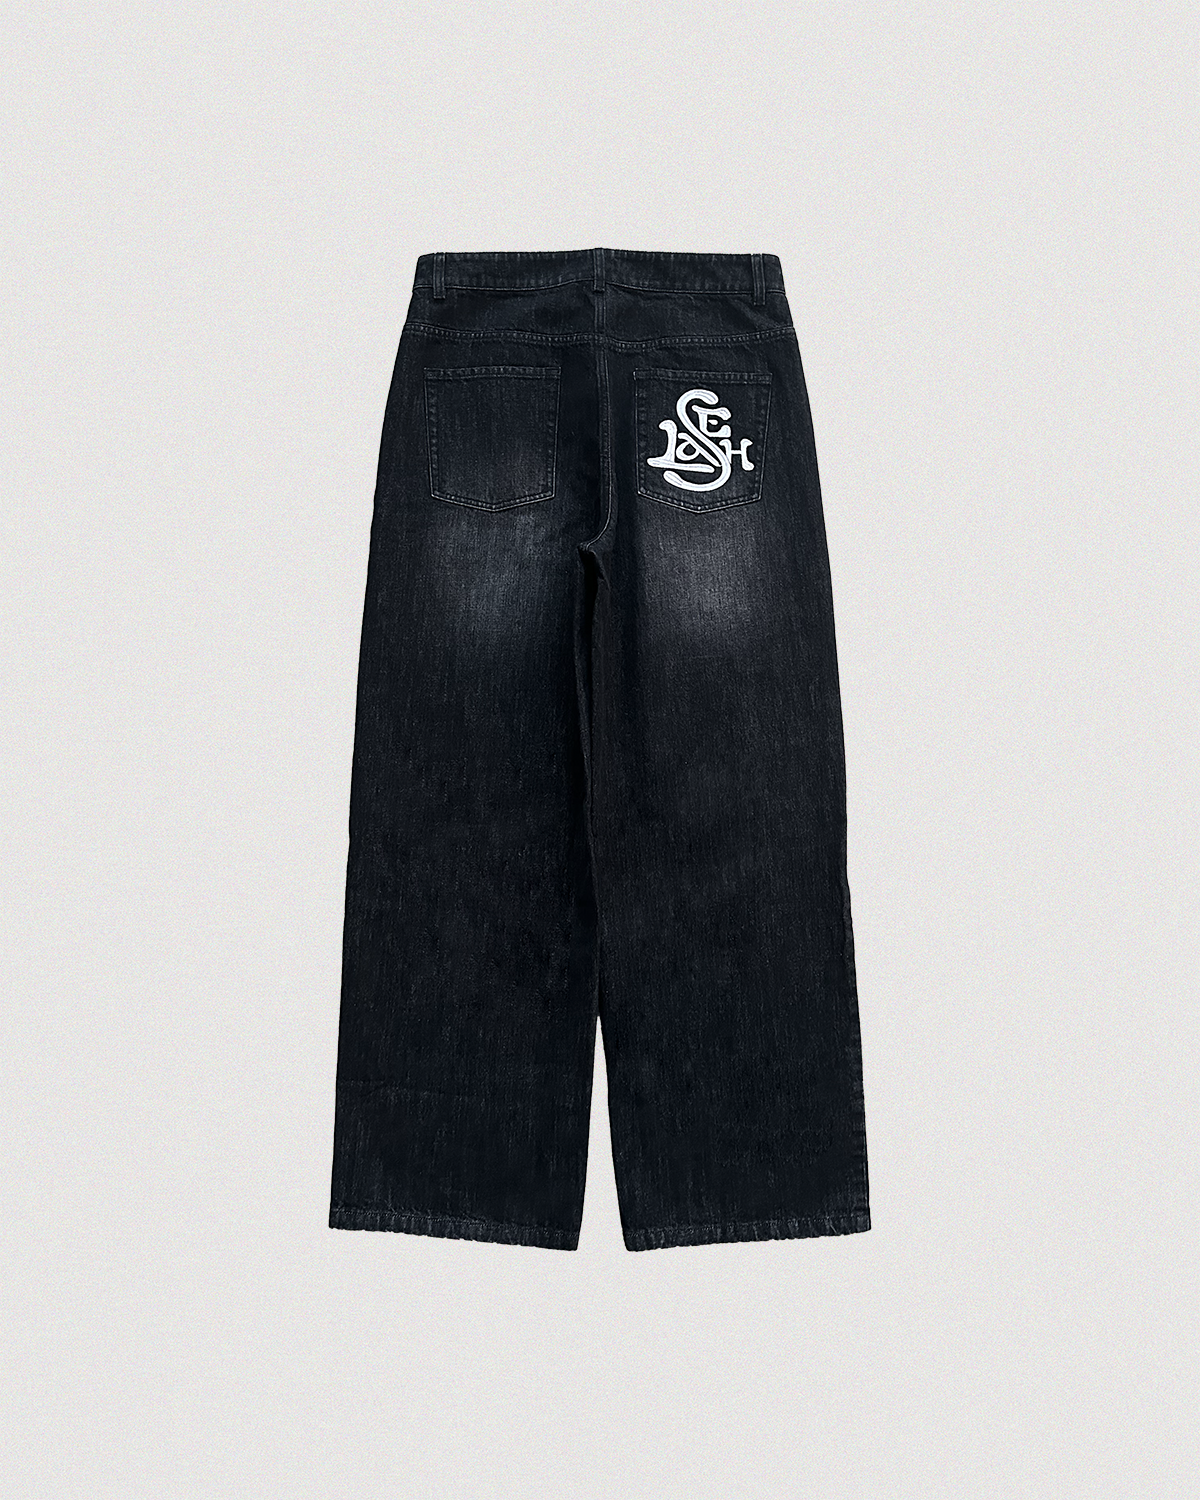 🌻Free World Clothing Co. Night Train Regular Black Denim Jeans Size 33 |  Black denim jeans, Black denim, Clothing co